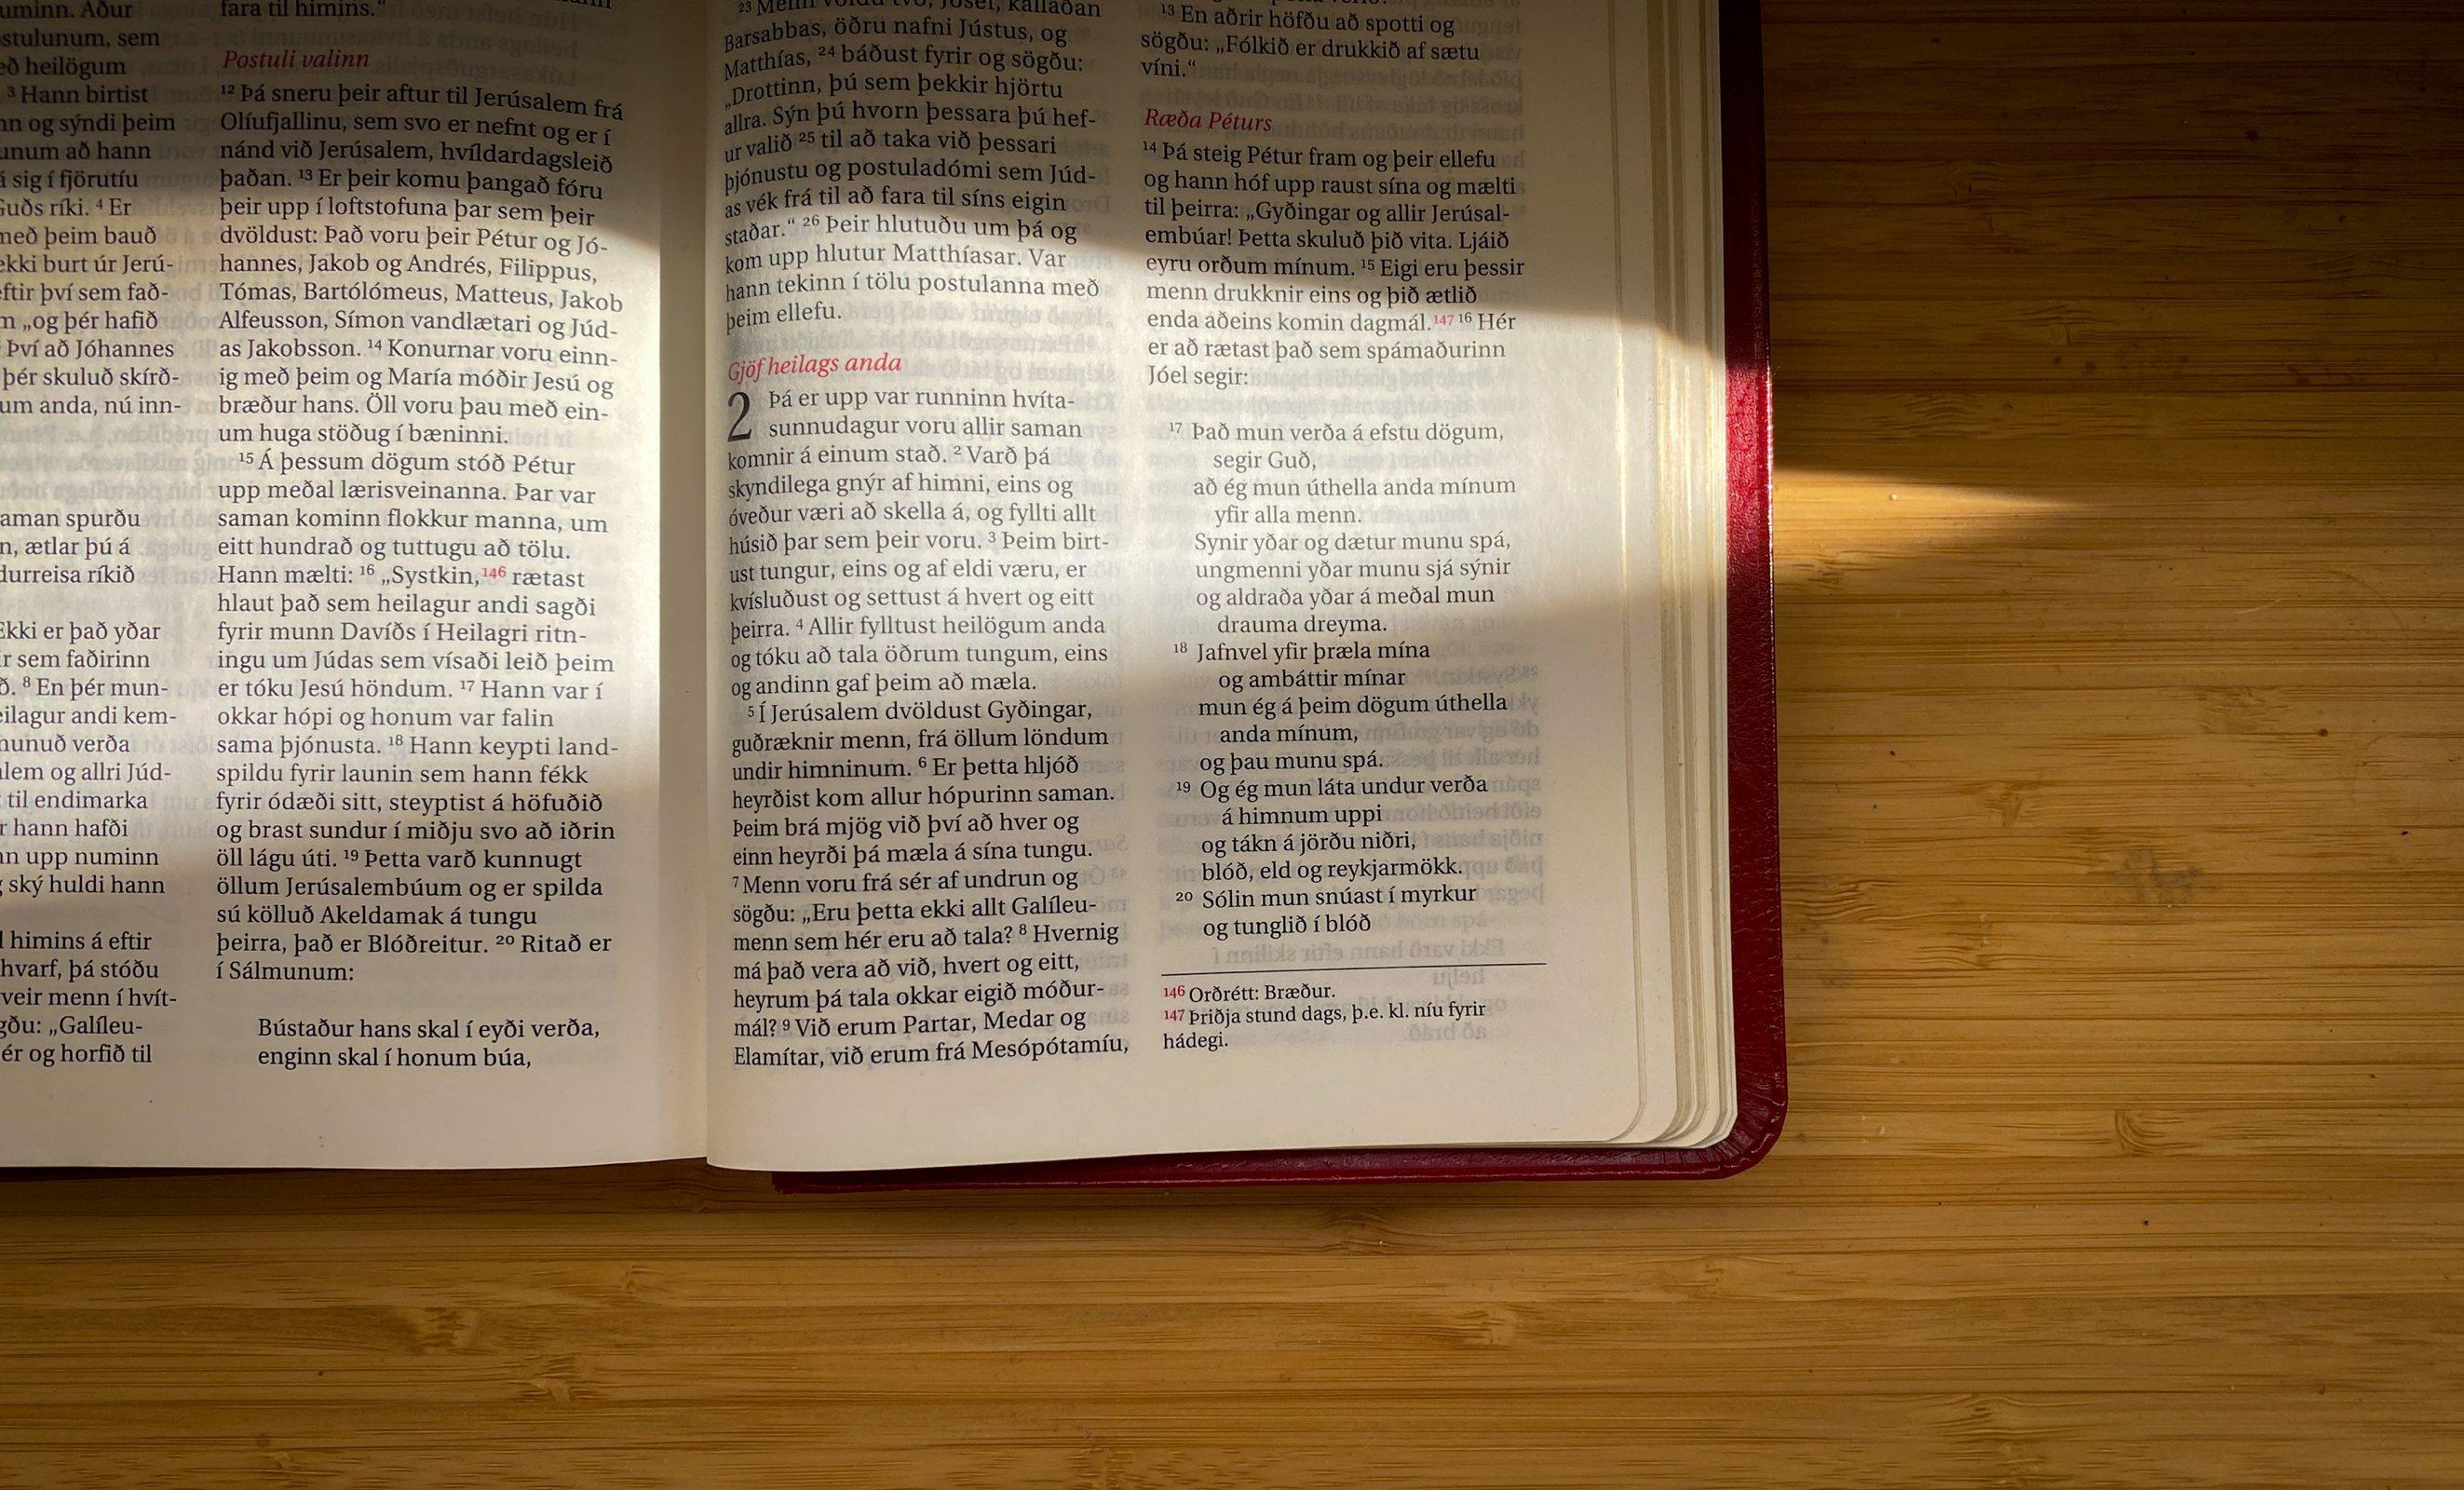 Der Abschnitt aus der Apostelgeschichte in der isländischen Bibel von 2007. Foto: LWB/A. Danielsson